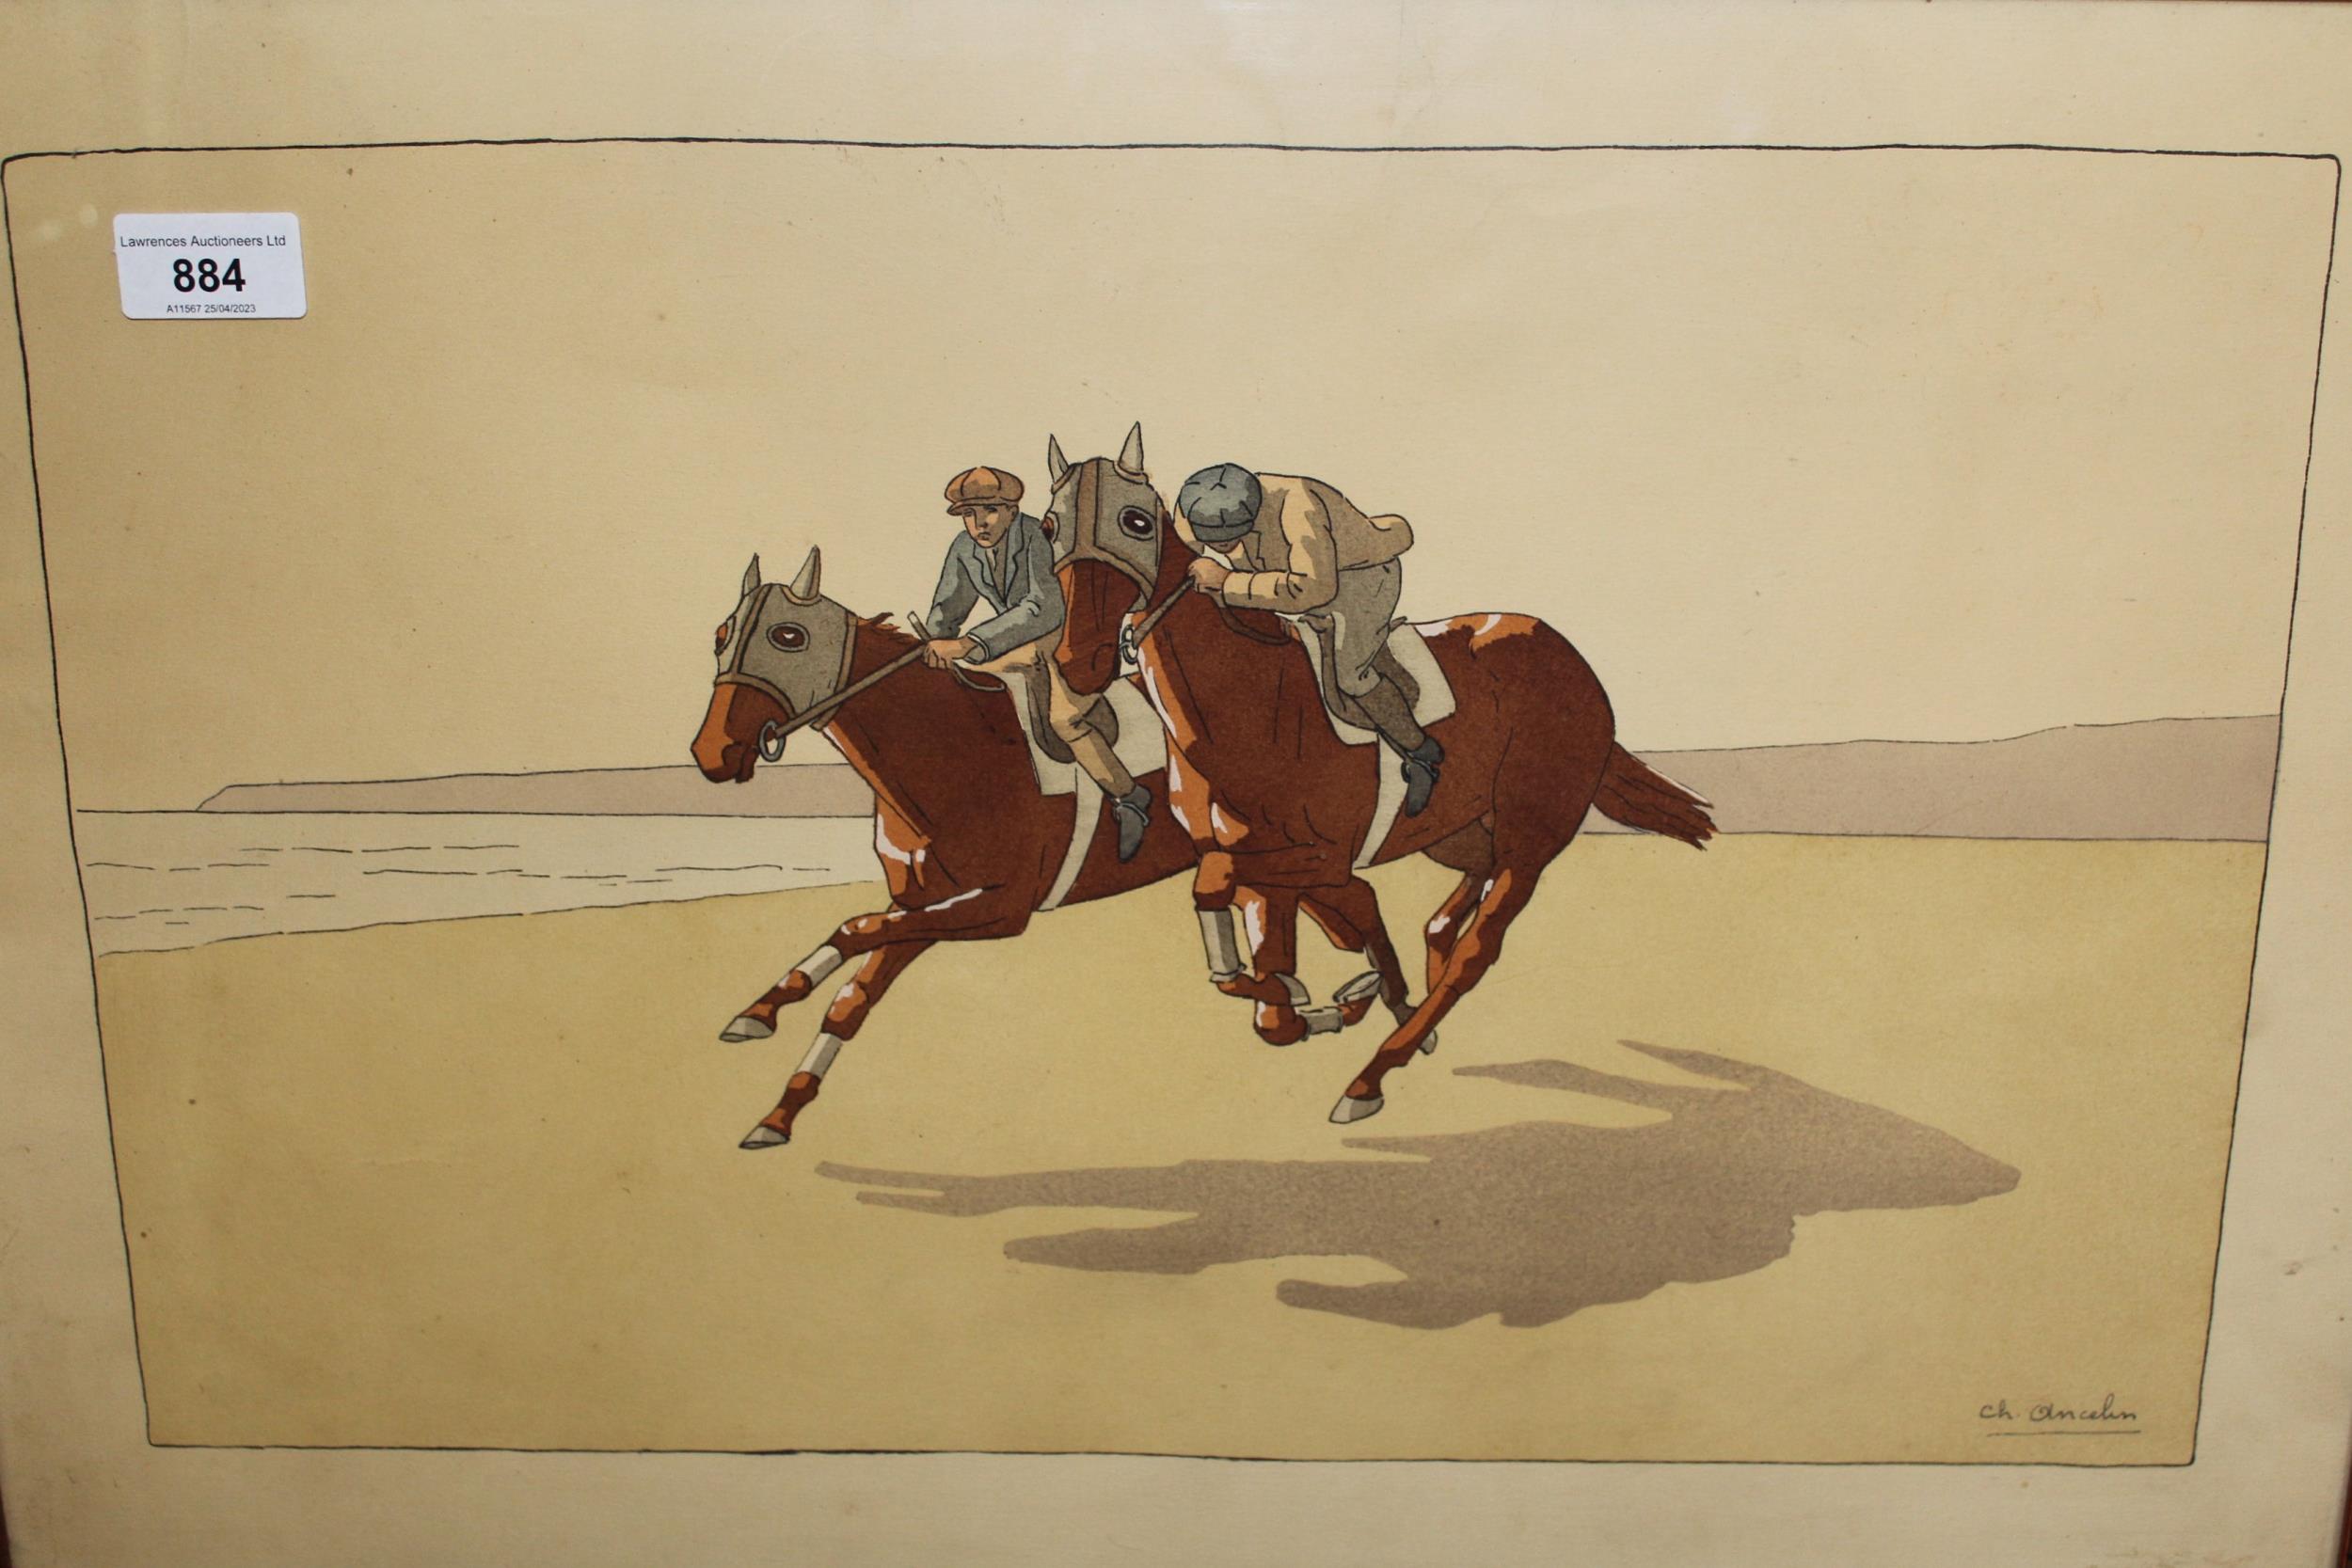 Charles Ancelin, lithograph, racehorses exercising on the beach, 37cms x 54cms, gilt framed